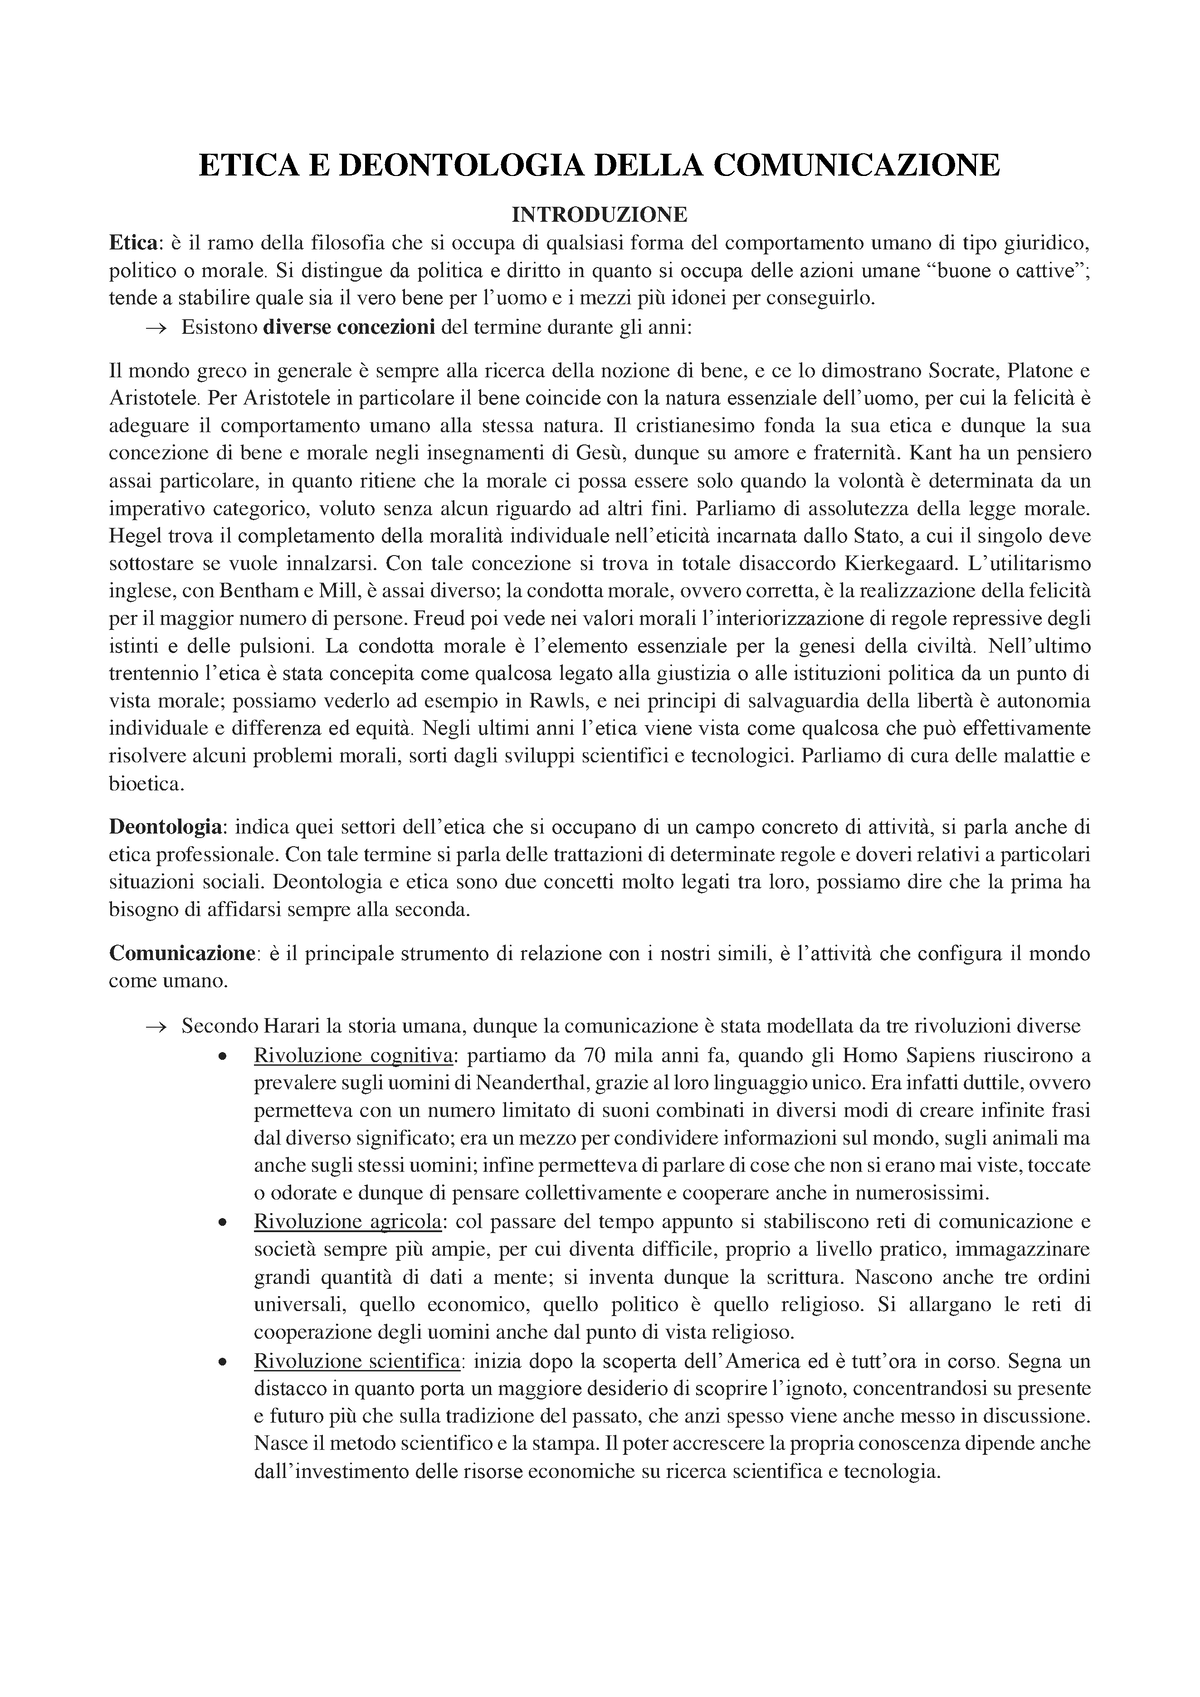 Etica E Deontologia Etica E Deontologia Della Comunicazione Introduzione Etica è Il Ramo 4643